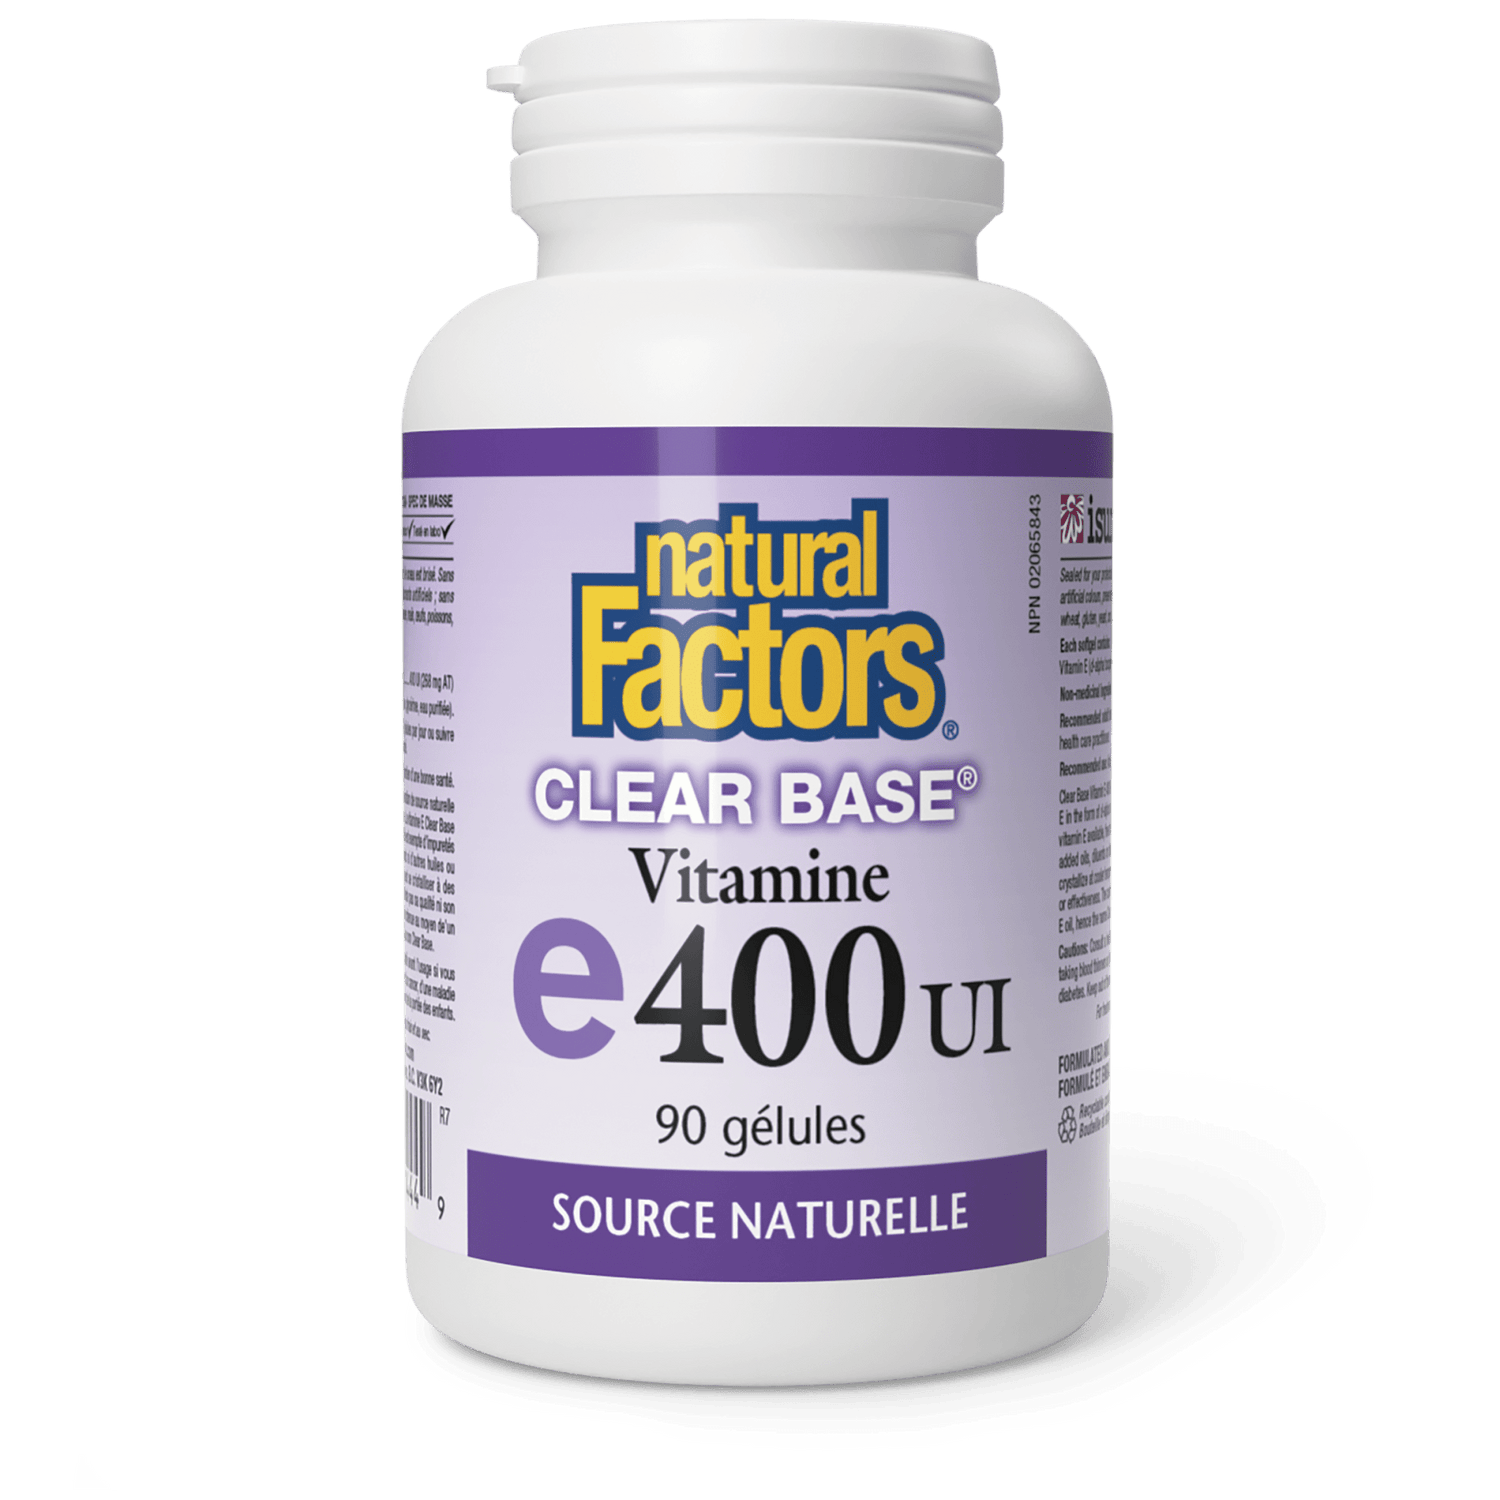 Vitamine E Clear BaseMD 400 UI, source naturelle, Natural Factors|v|image|1444